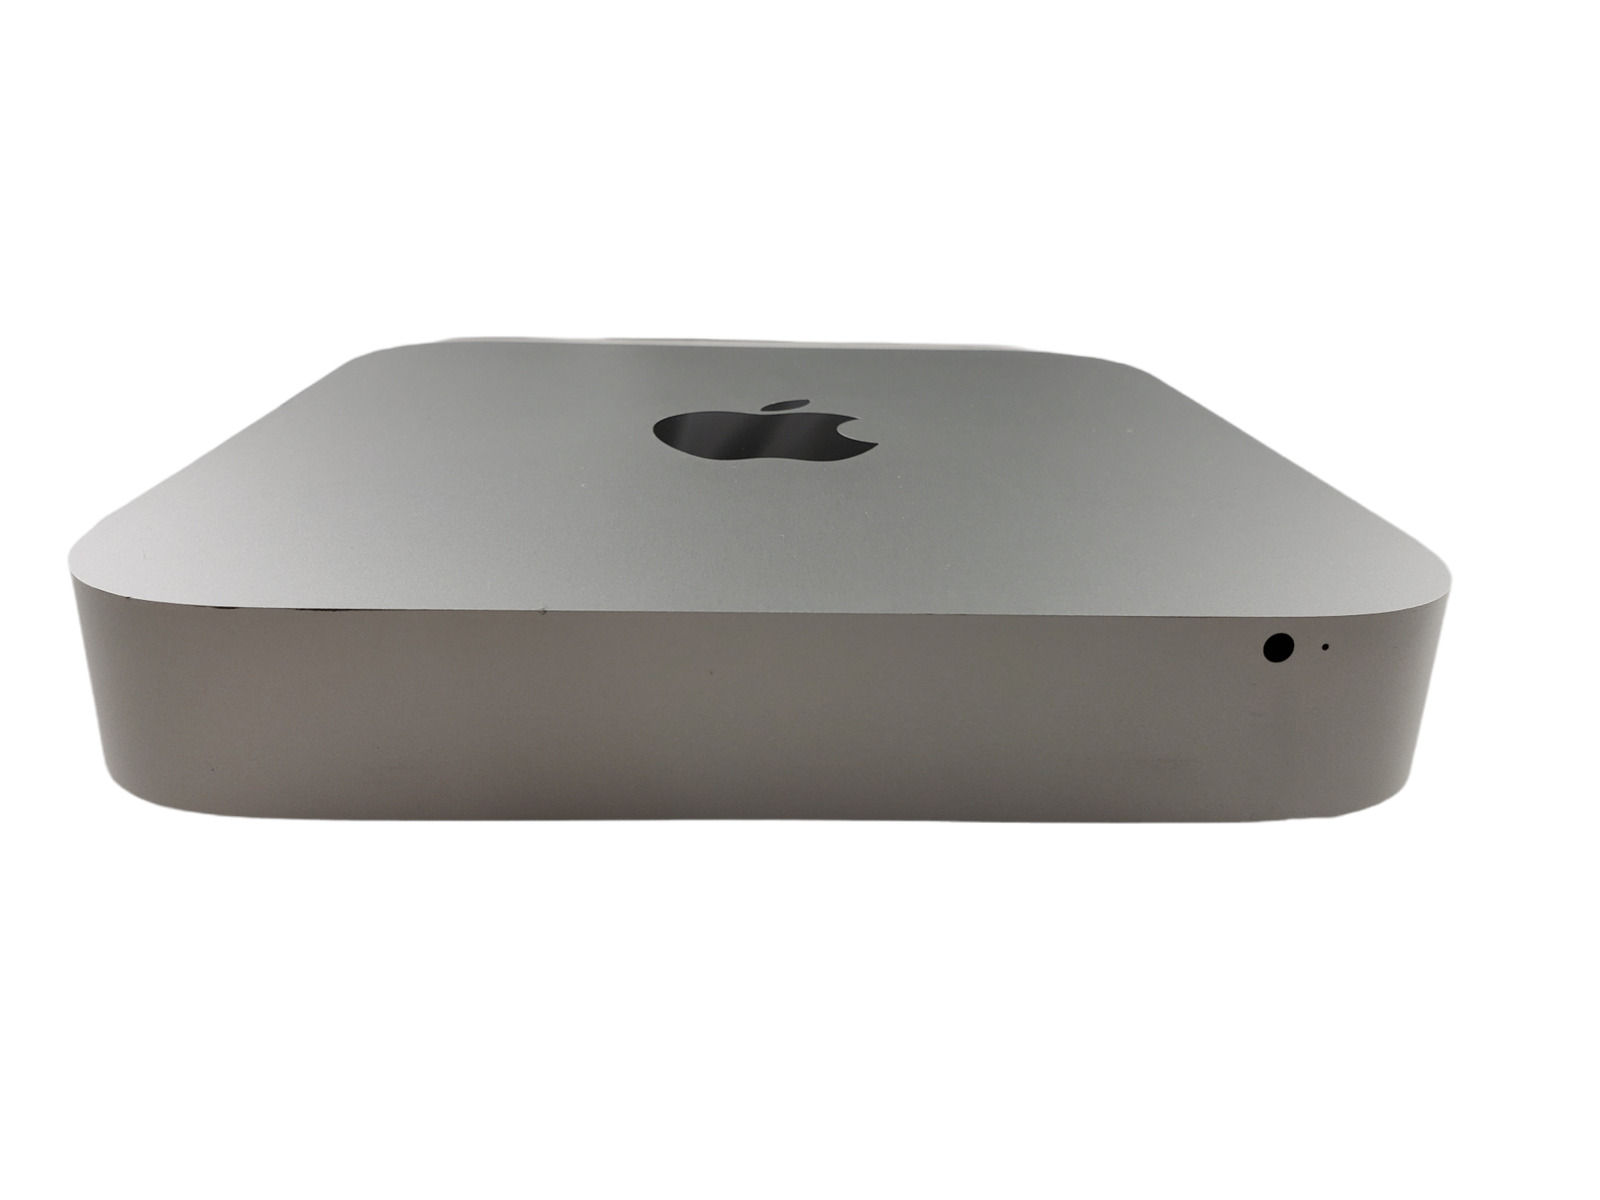 Apple Mac Mini A1347 i7 2.30GHz 8GB 1TB SSD OS X Desktop PC